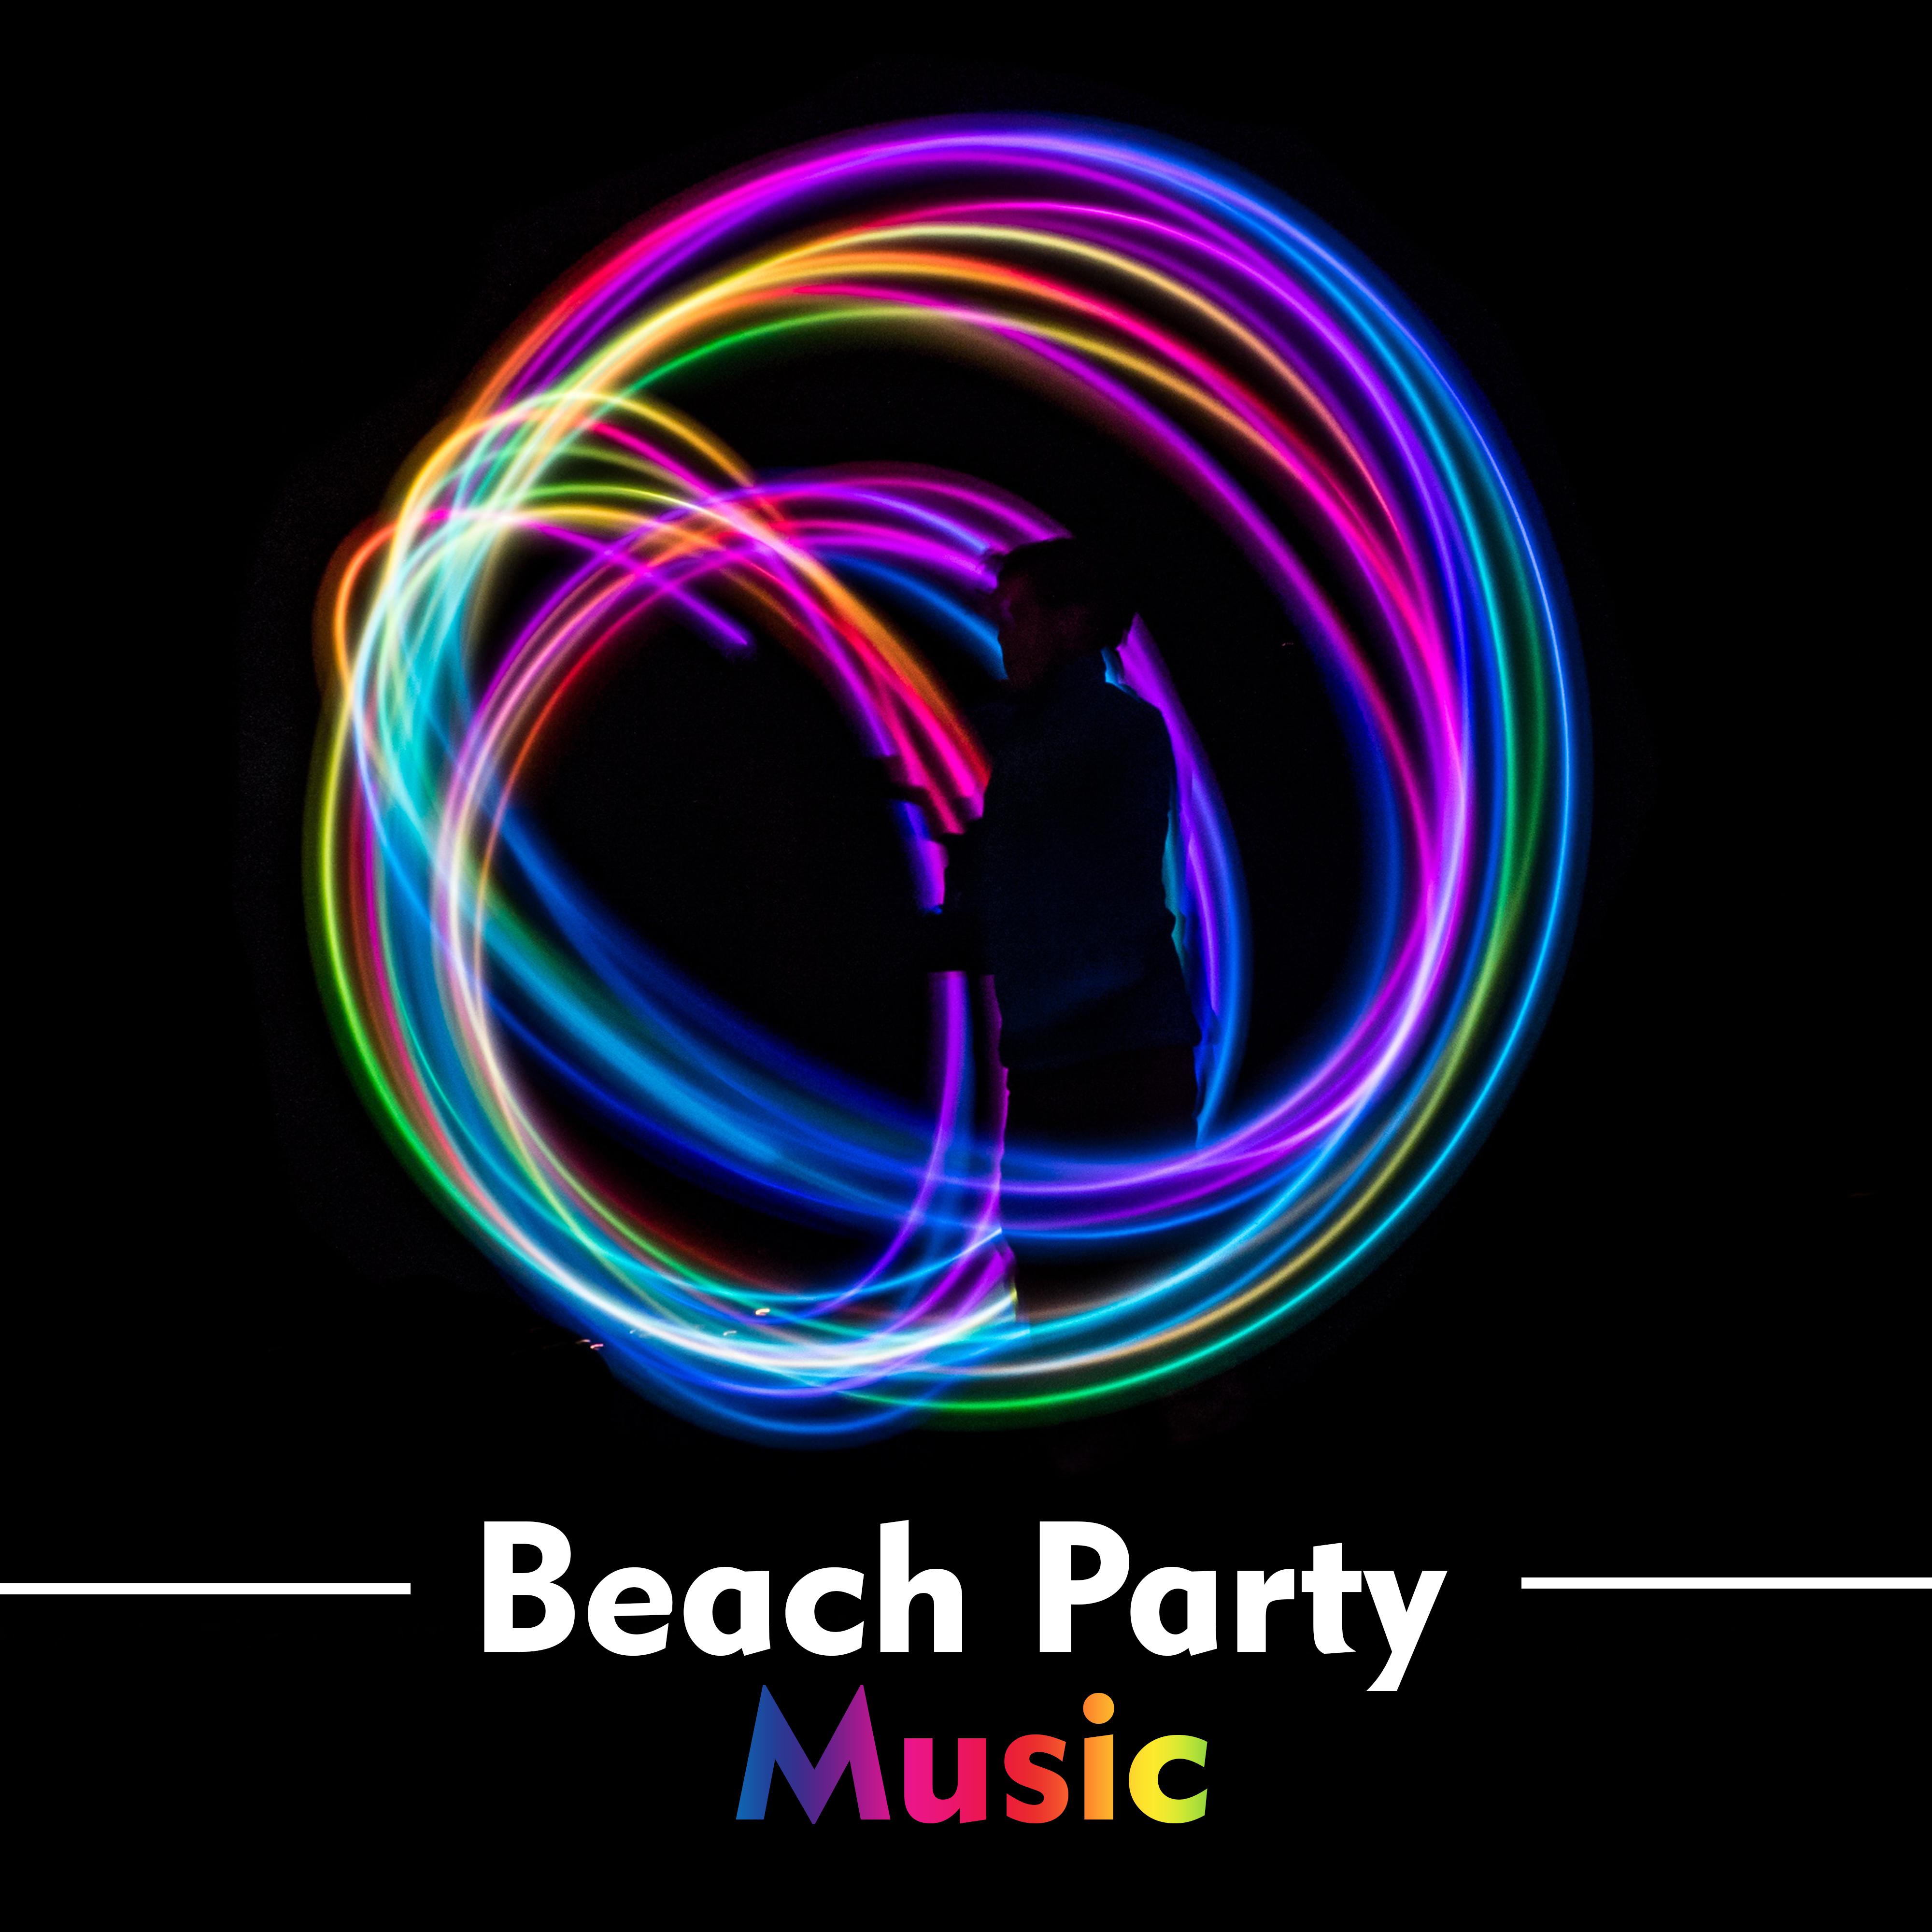 Beach Party Music